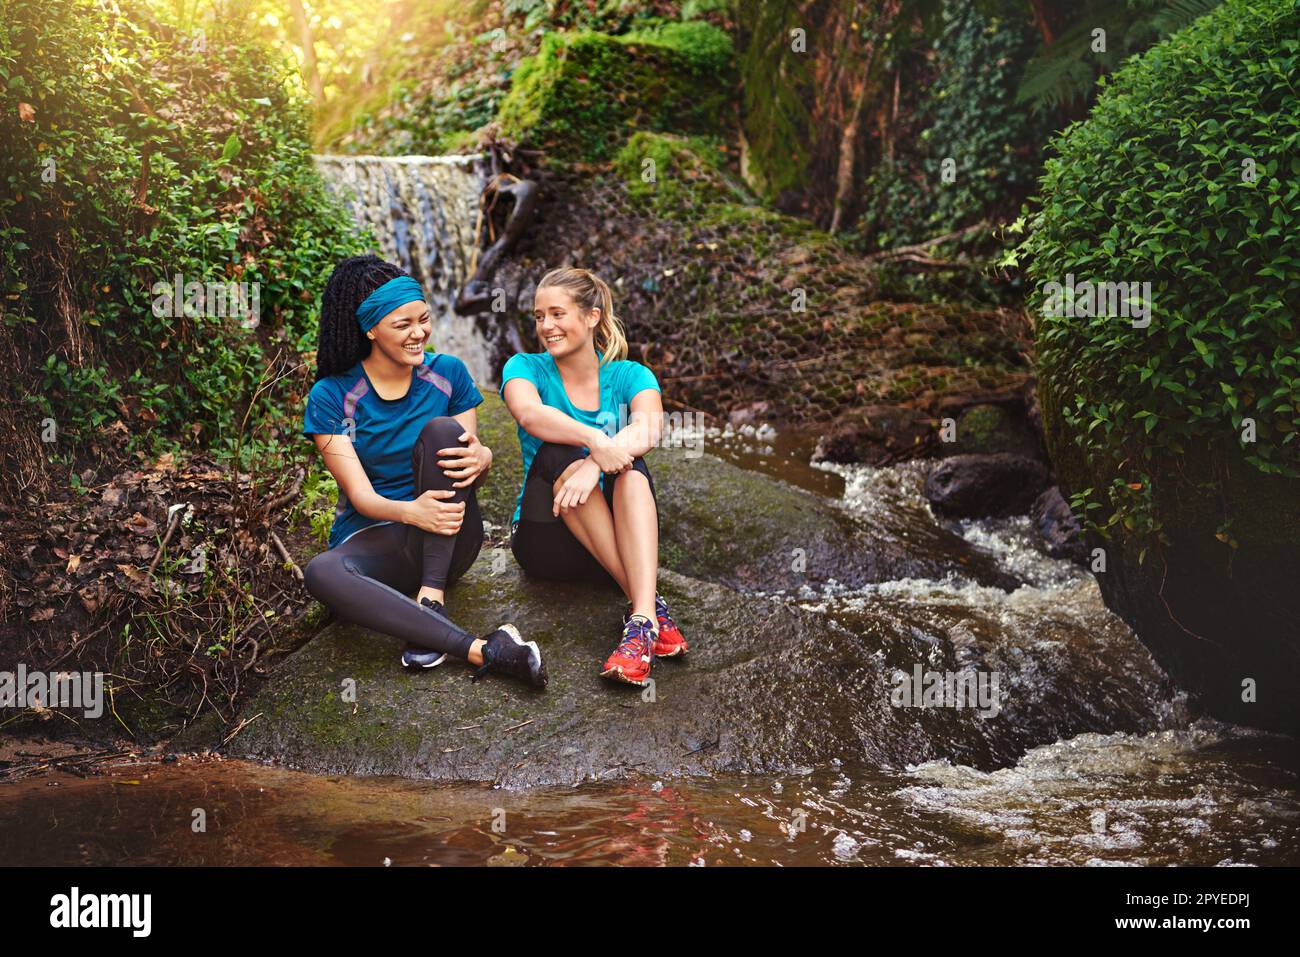 Das Leben ist besser mit einem guten Freund. Zwei sportliche junge Frauen machen eine Pause, während sie in der Natur trainieren. Stockfoto